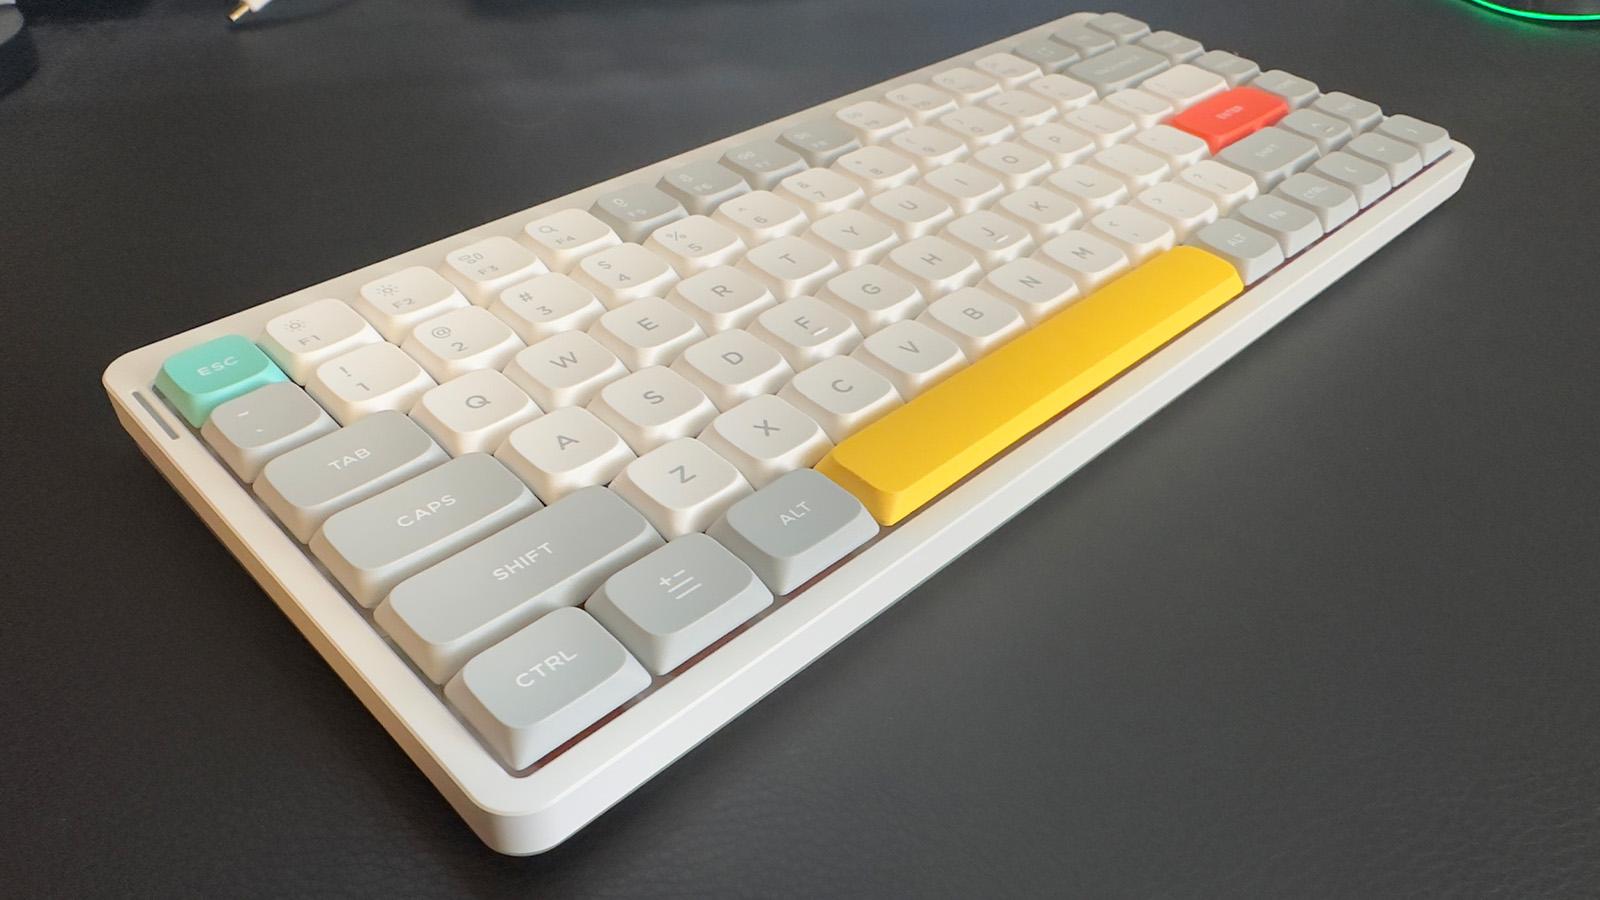 NuPhy Air75 V2 keyboard